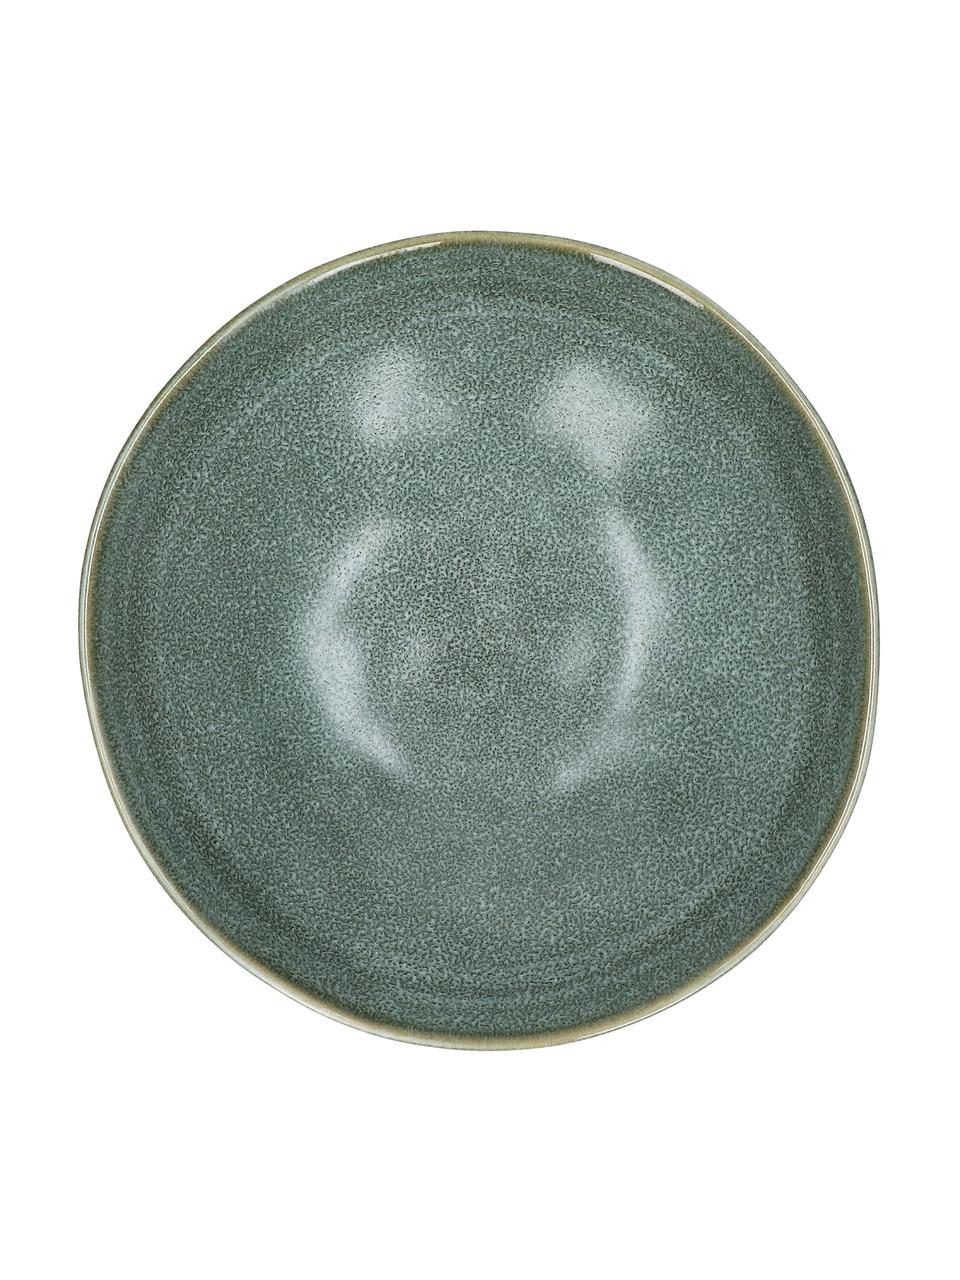 Hluboké talíře z kameniny s efektní glazurou Neboa, 4 ks, Kamenina, Šedá, modrá, Ø 20 cm, V 7 cm